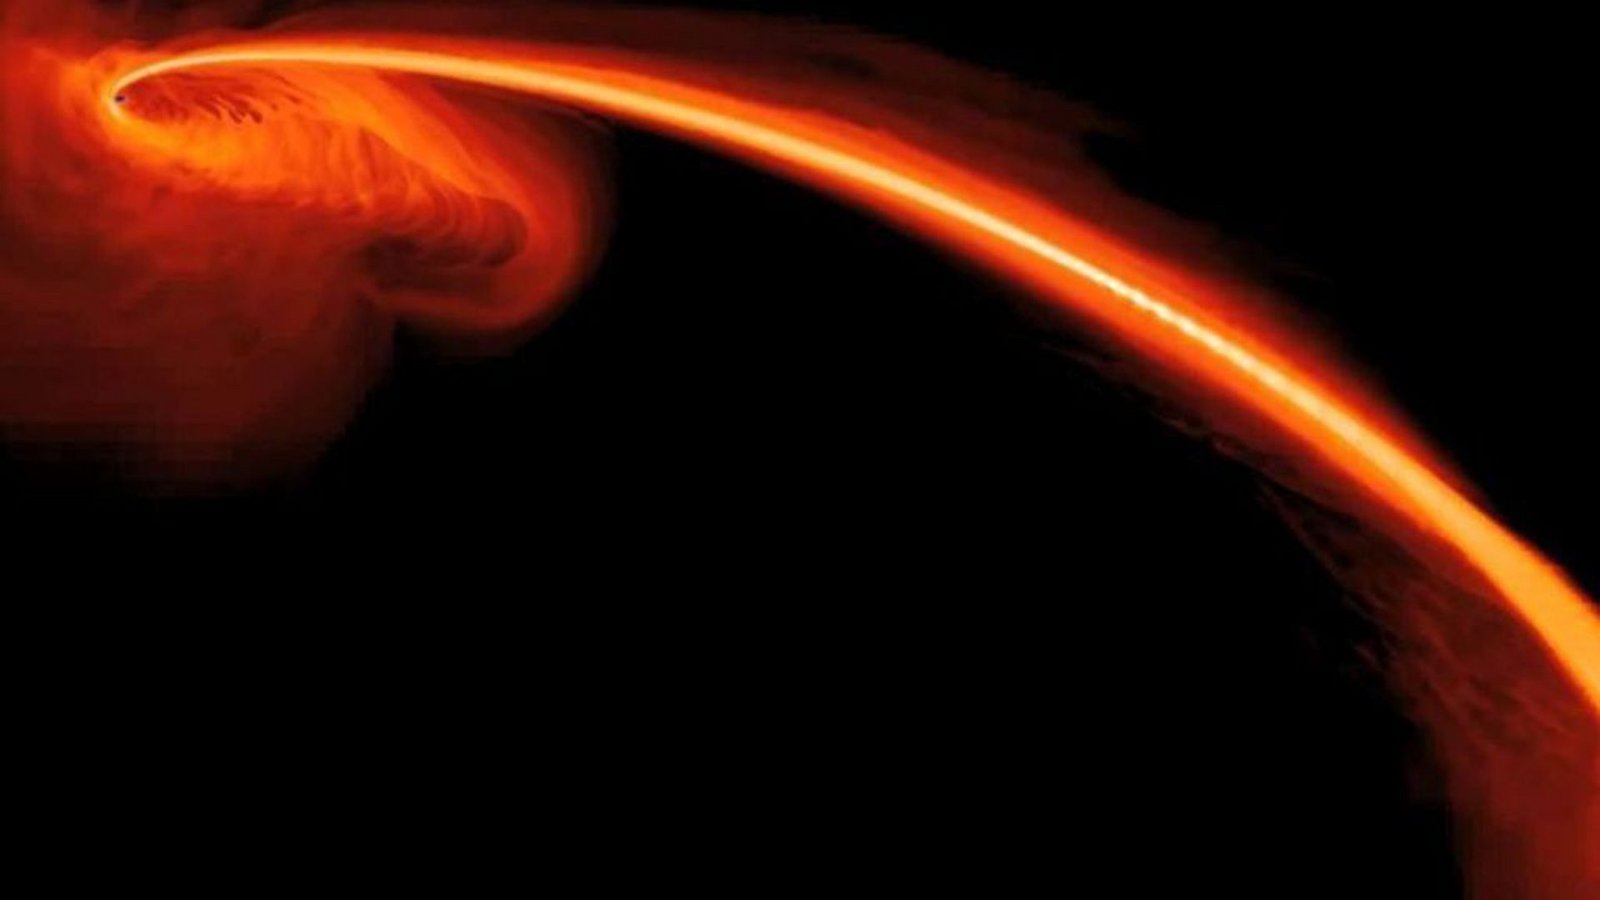 Die Computersimulation zeigt, wie ein Stern von einem Schwarzen Loch verschluckt wird.Foto: Esa/Hubble/Eso/dpa